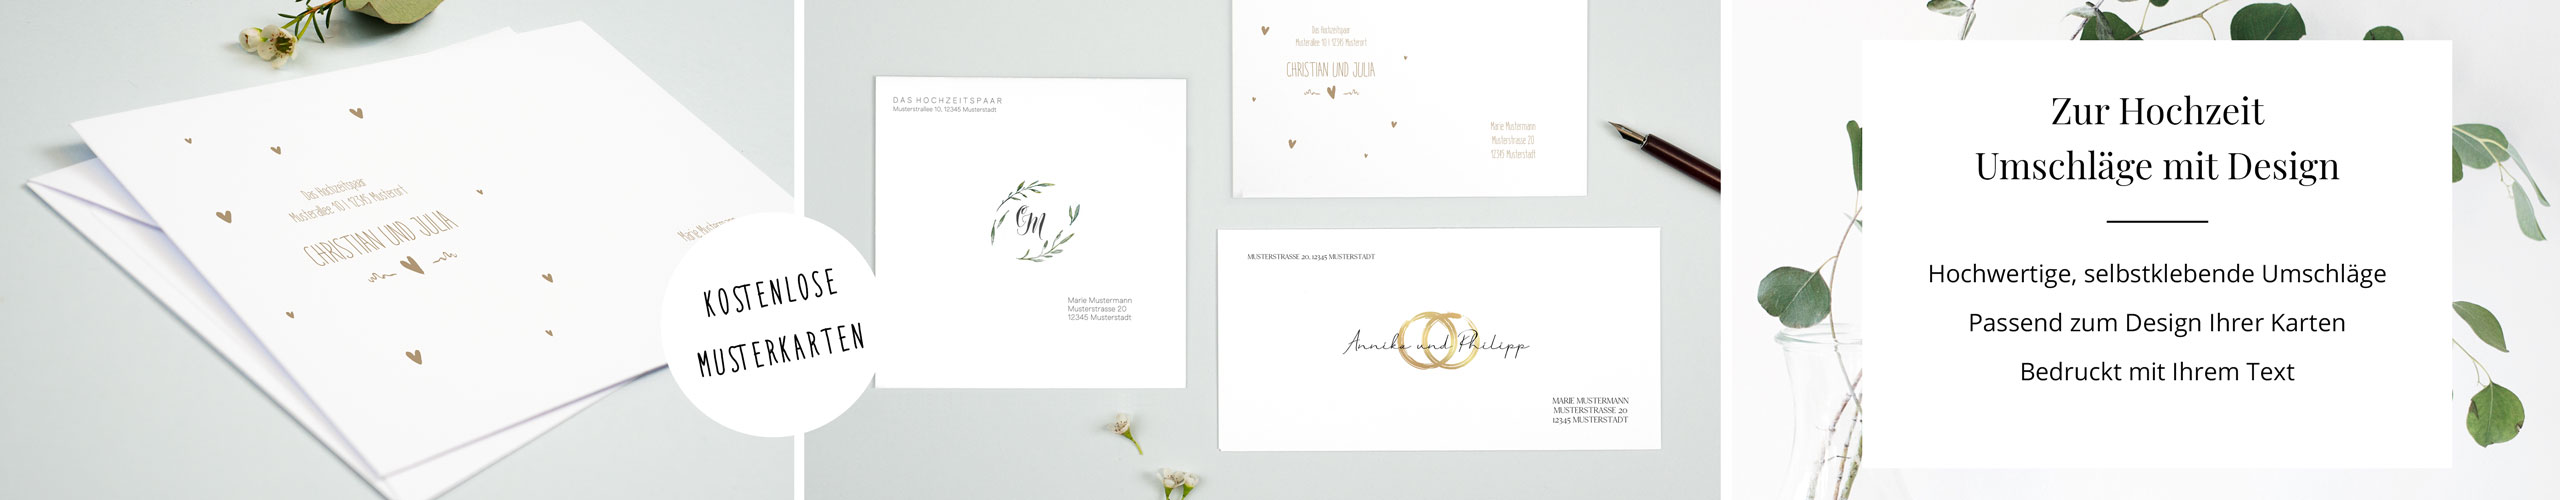 Umschläge zur Hochzeit mit unterschiedlichen Designs